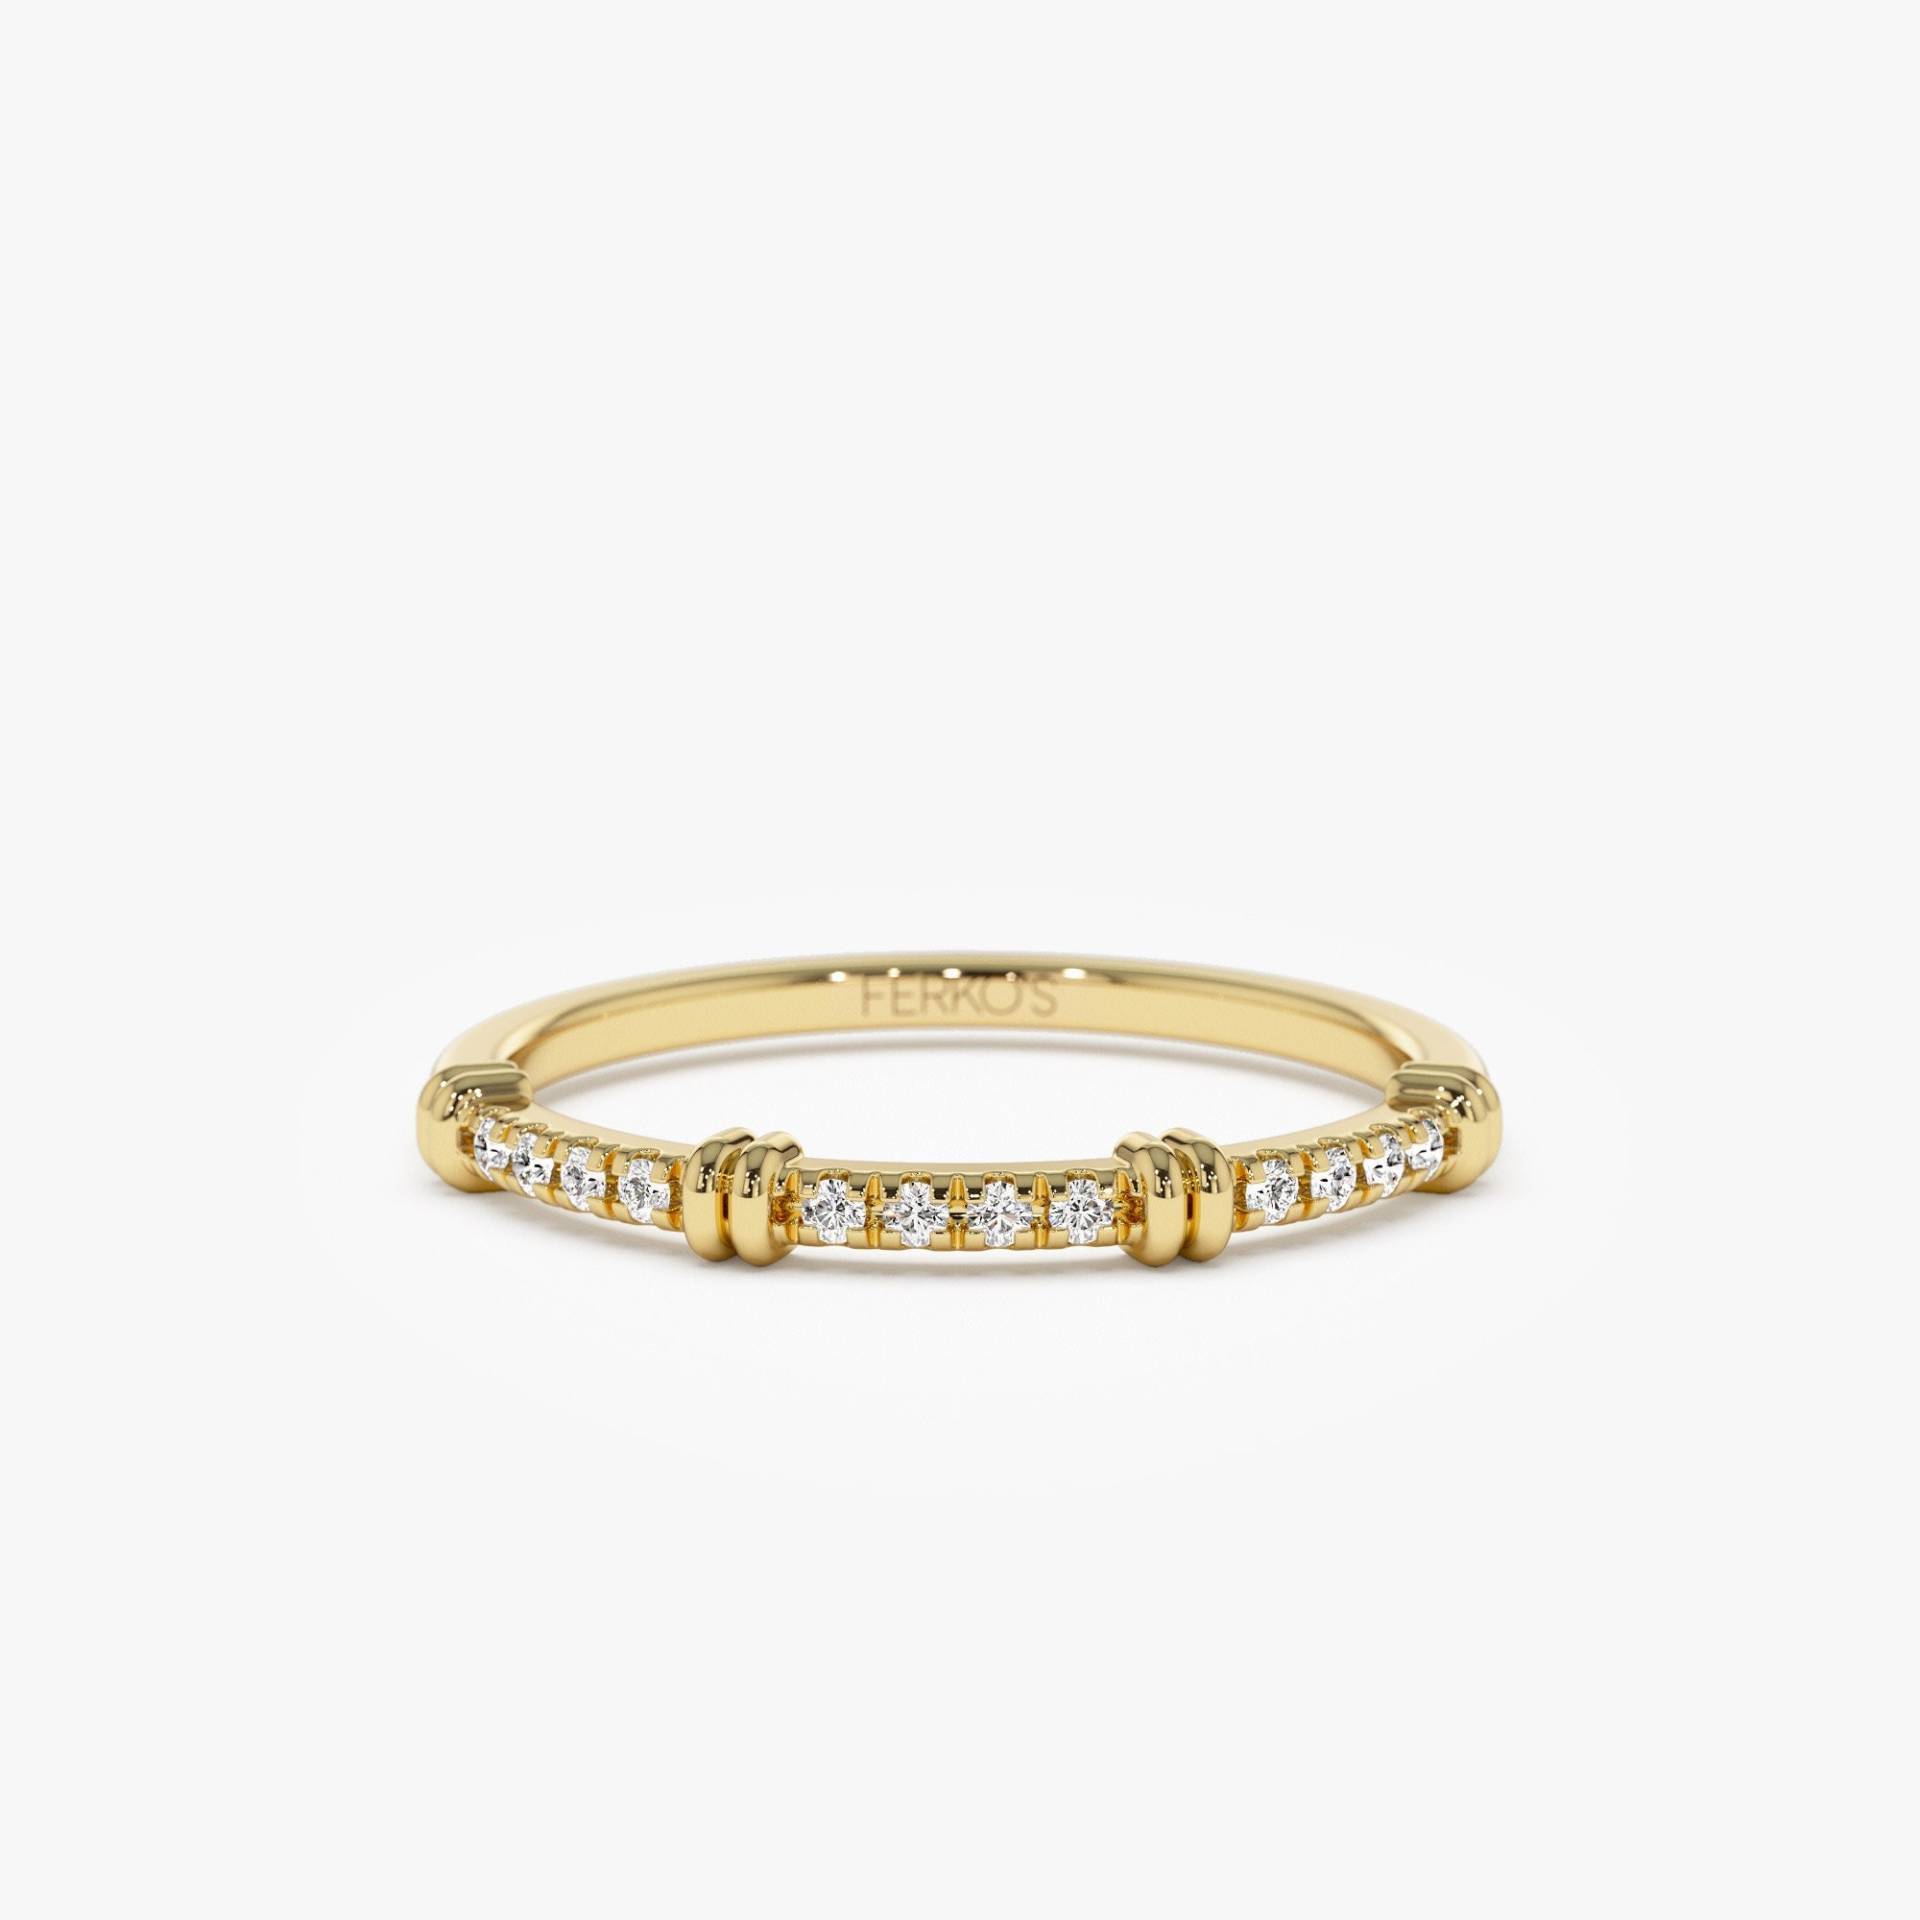 14K Gold Diamant Ring/Einzigartige Stapeln Ehering Pave Set Multi Stein Zierlicher von FerkosFineJewelry